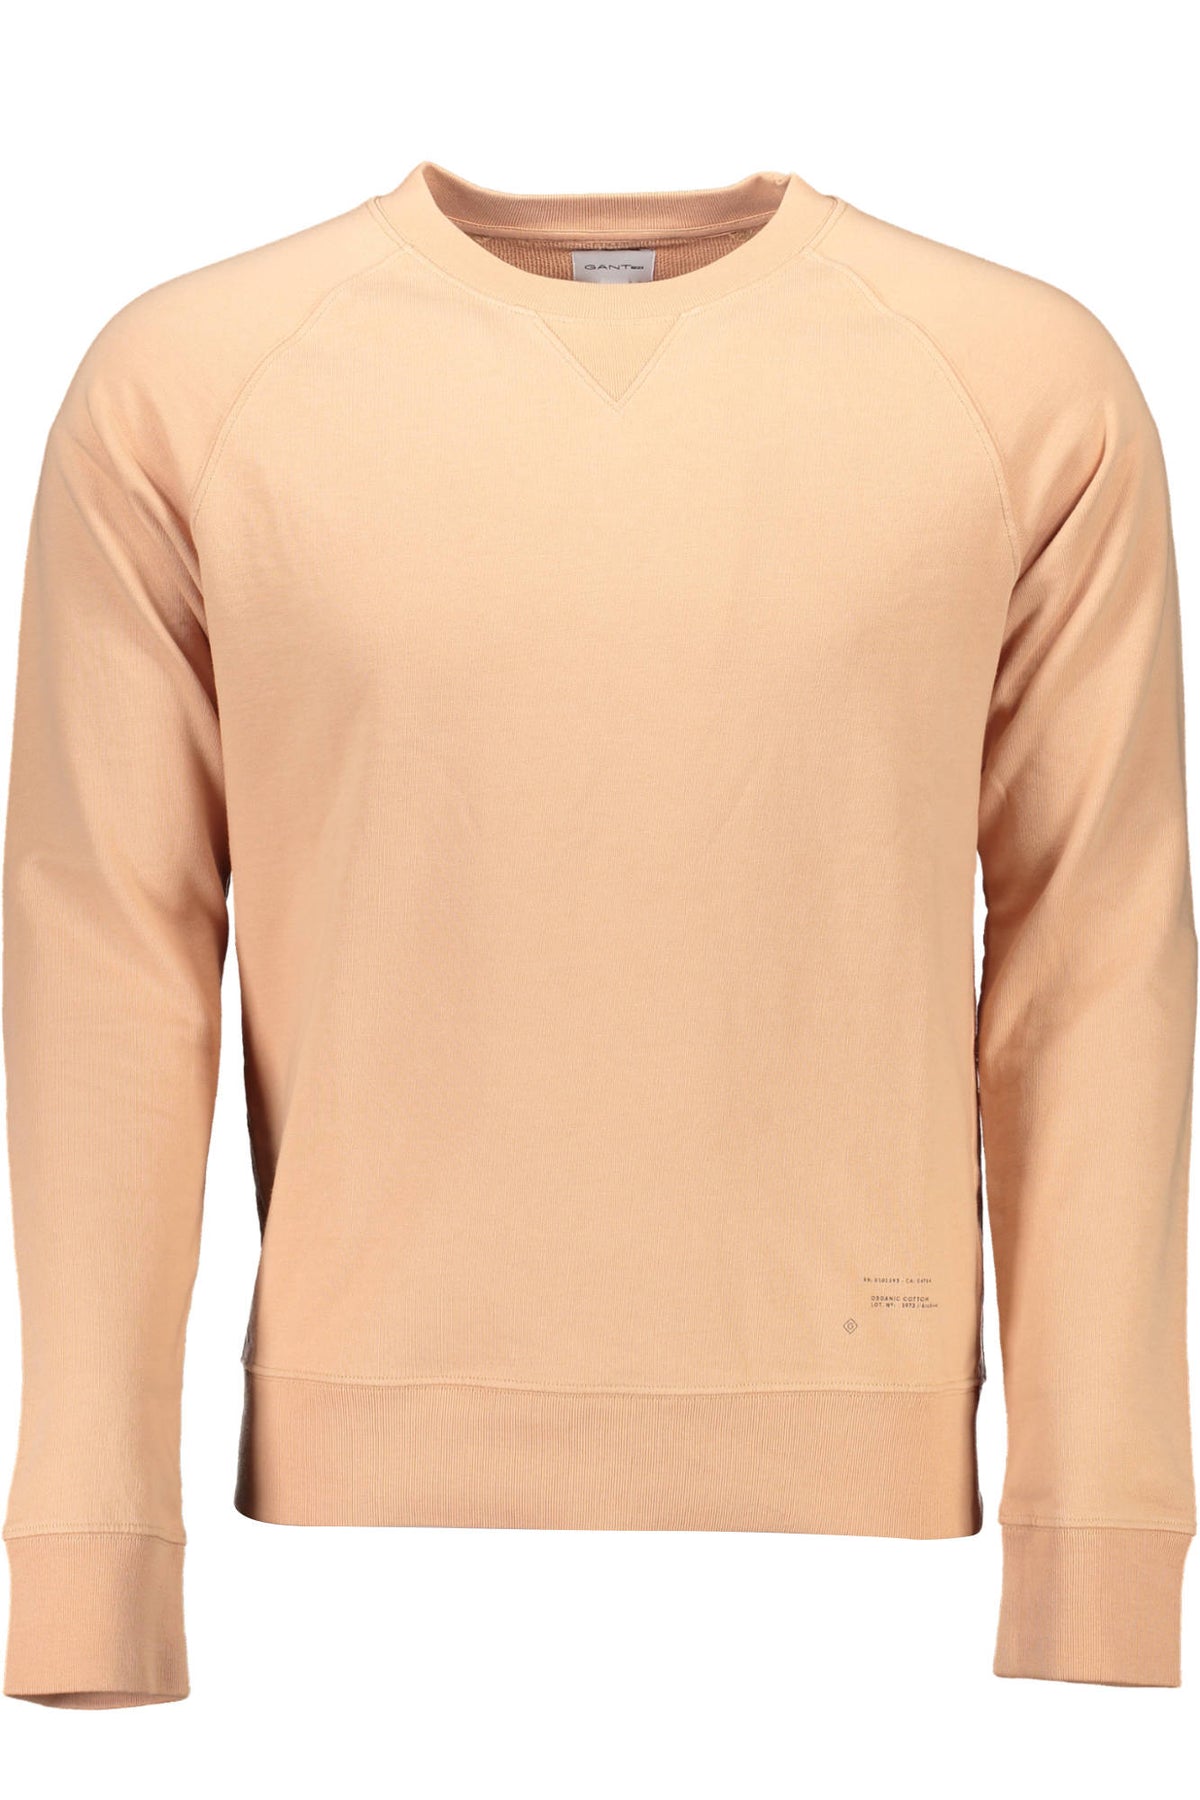 Gant Herren Pullover Sweatshirt mit Rundhalsausschnitt, langarm